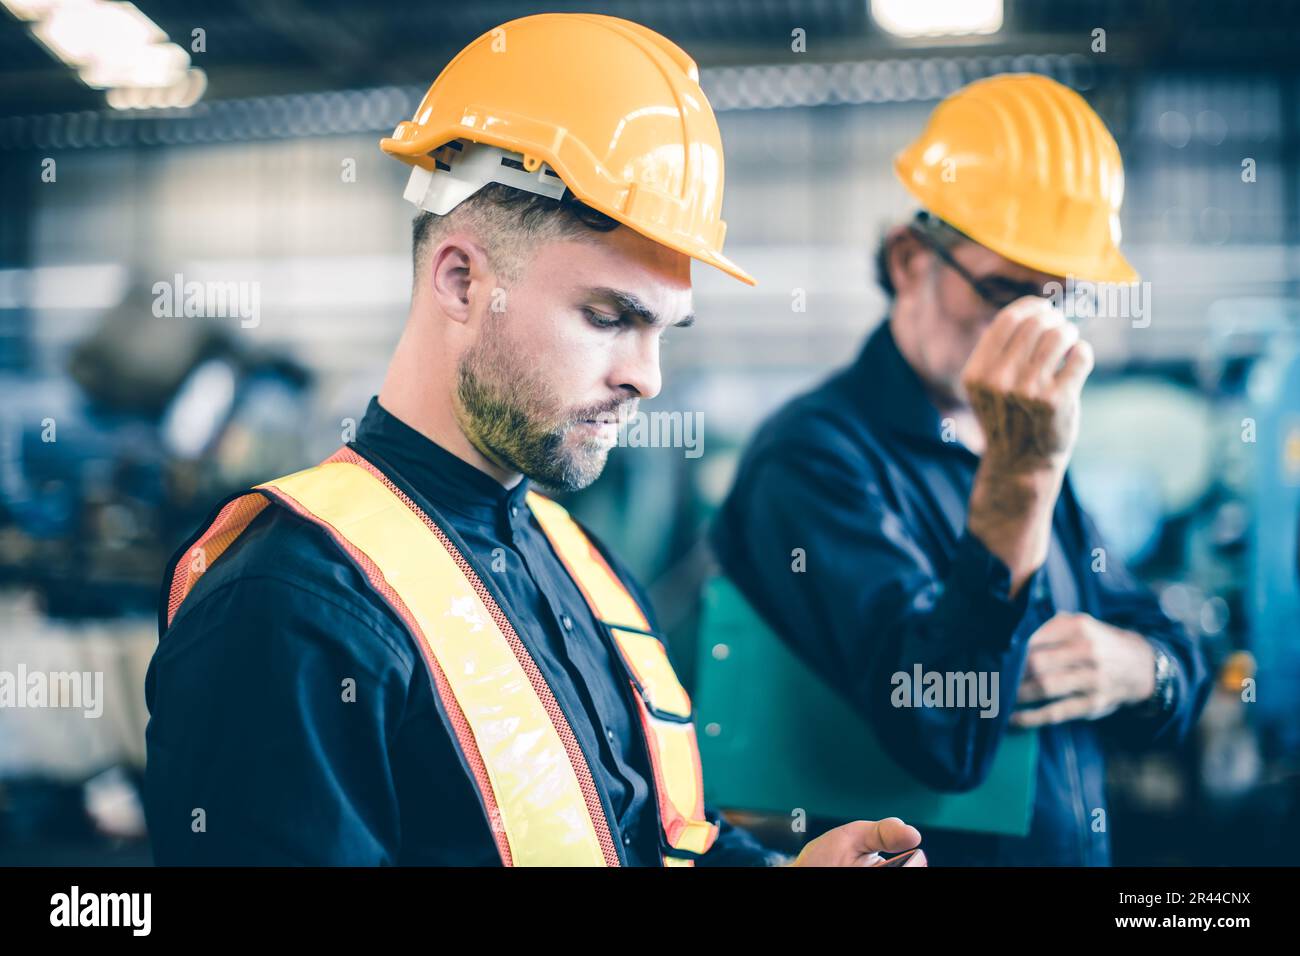 Teamarbeit männlicher junger Arbeiter in der Schwerindustrie mit Schutzanzug Schutzhelm Stockfoto